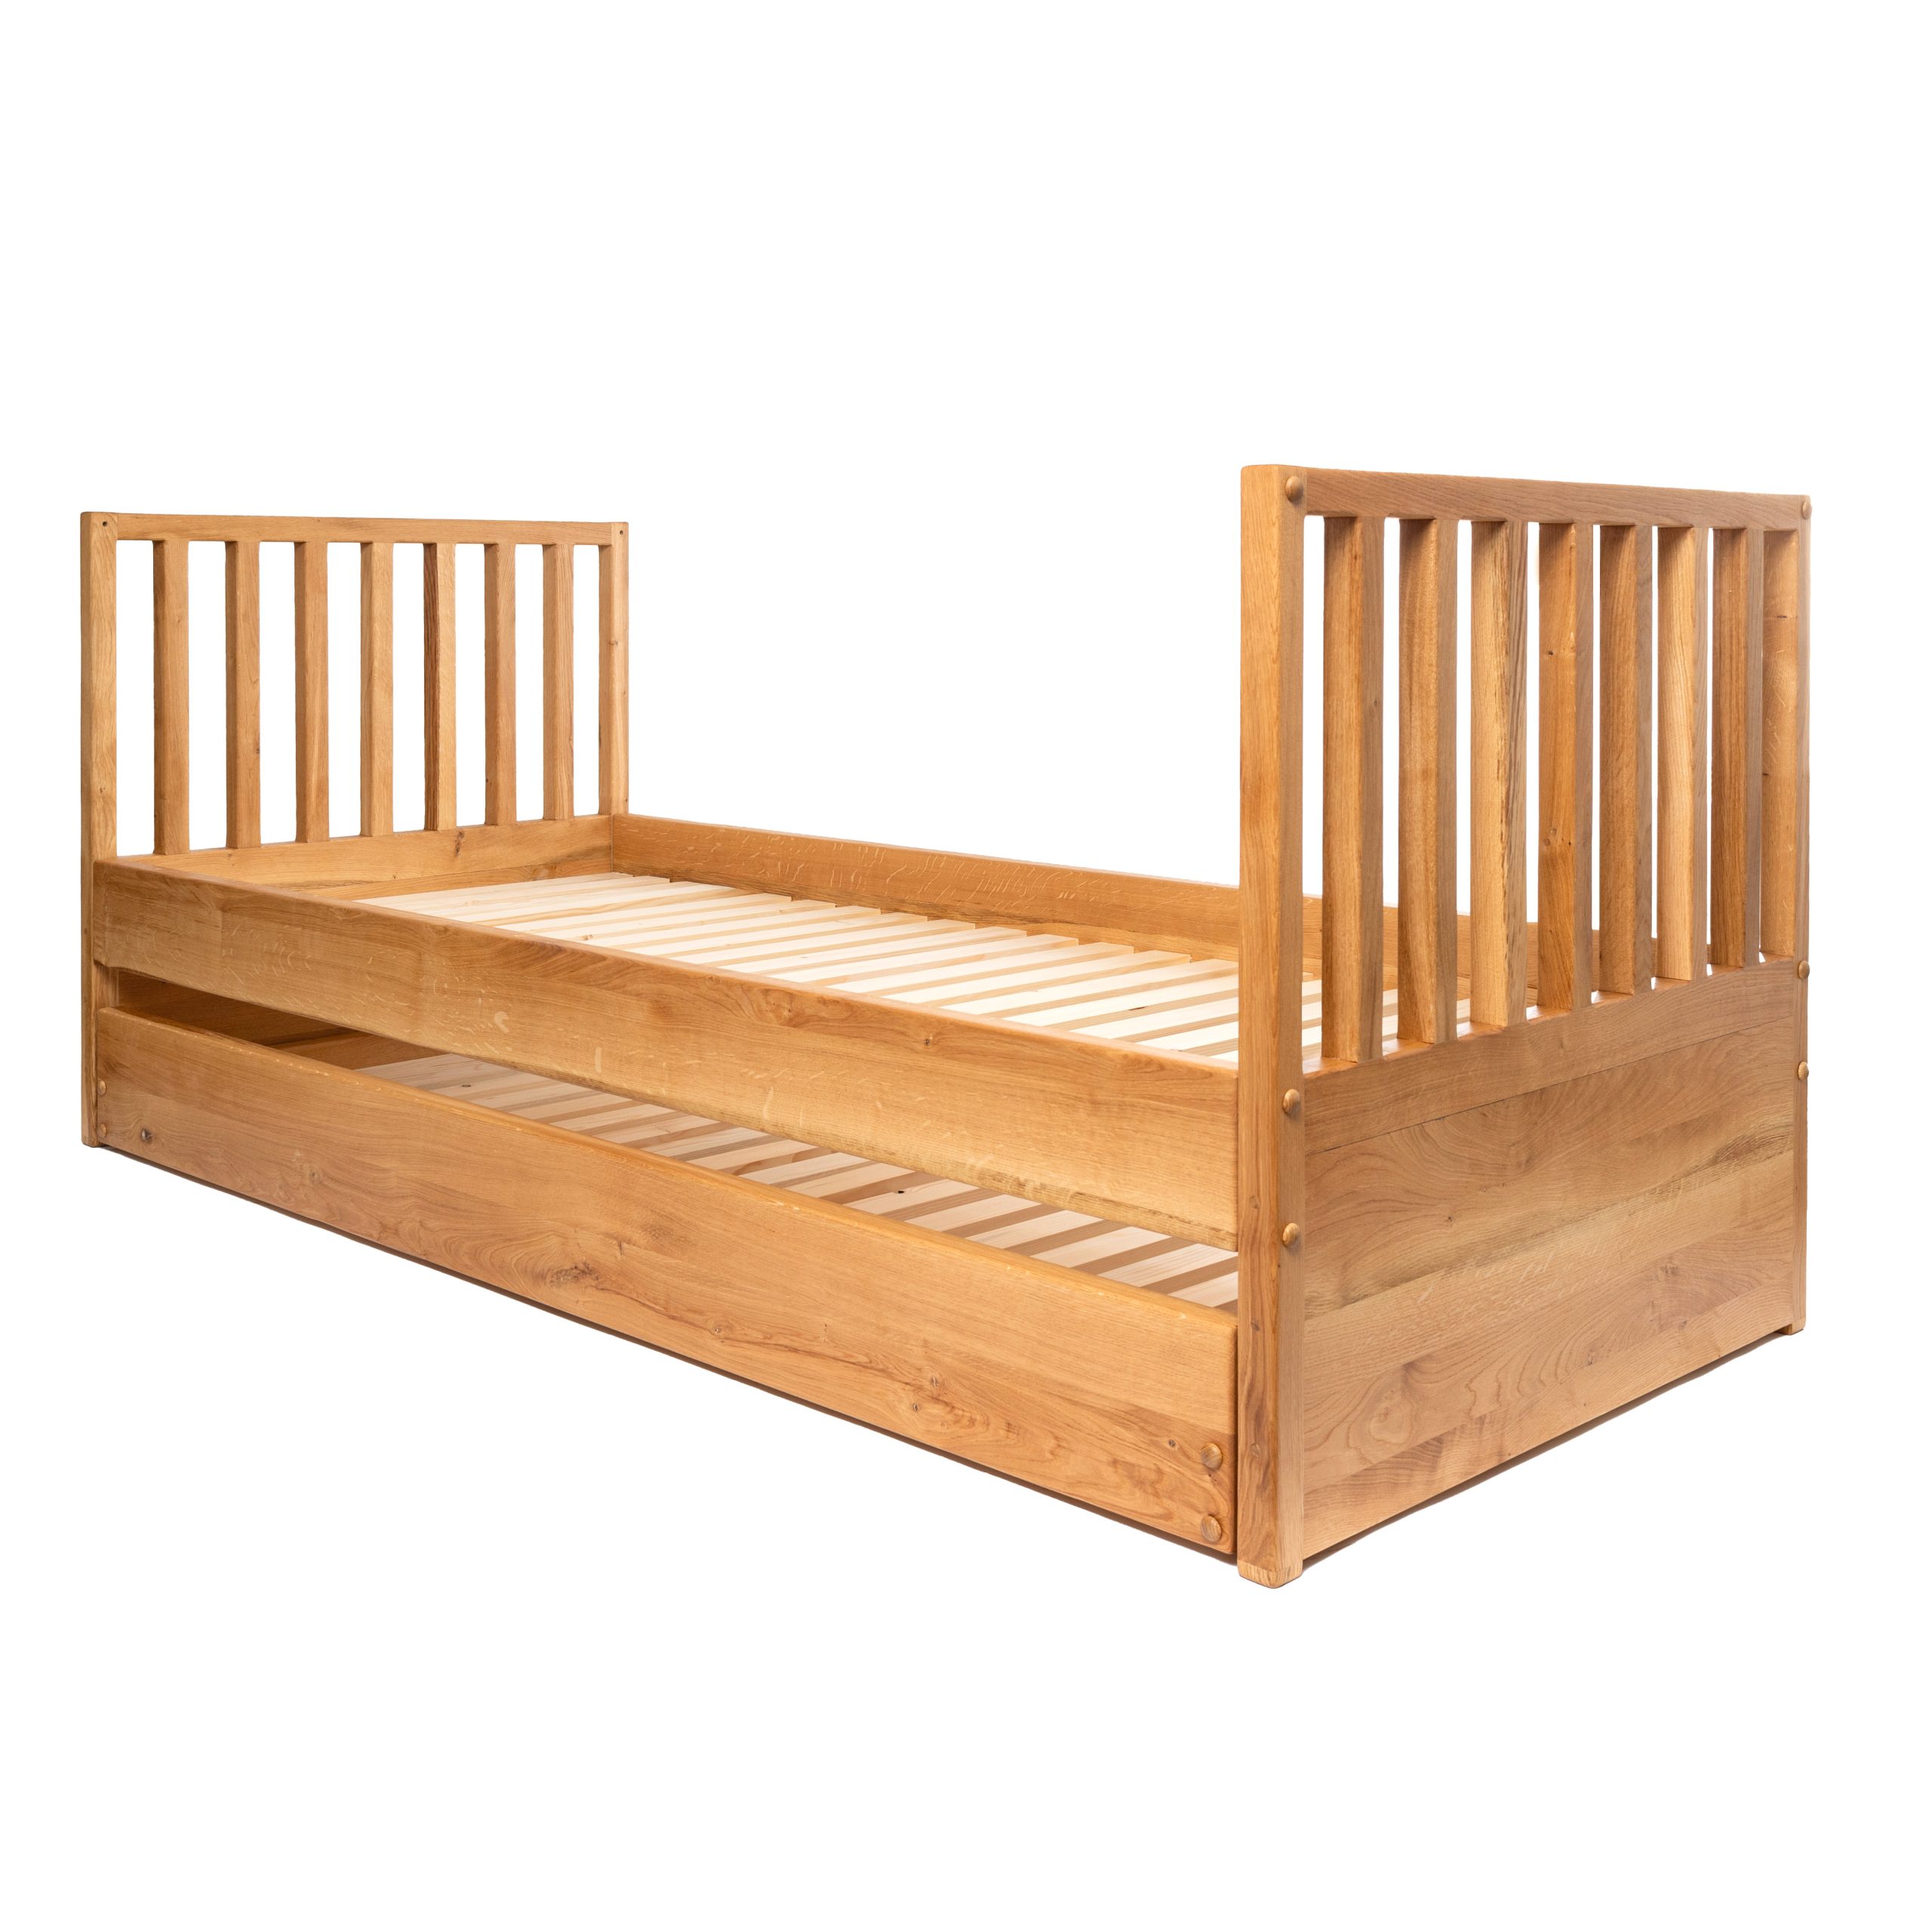 Children's bed Mojca1 200x90